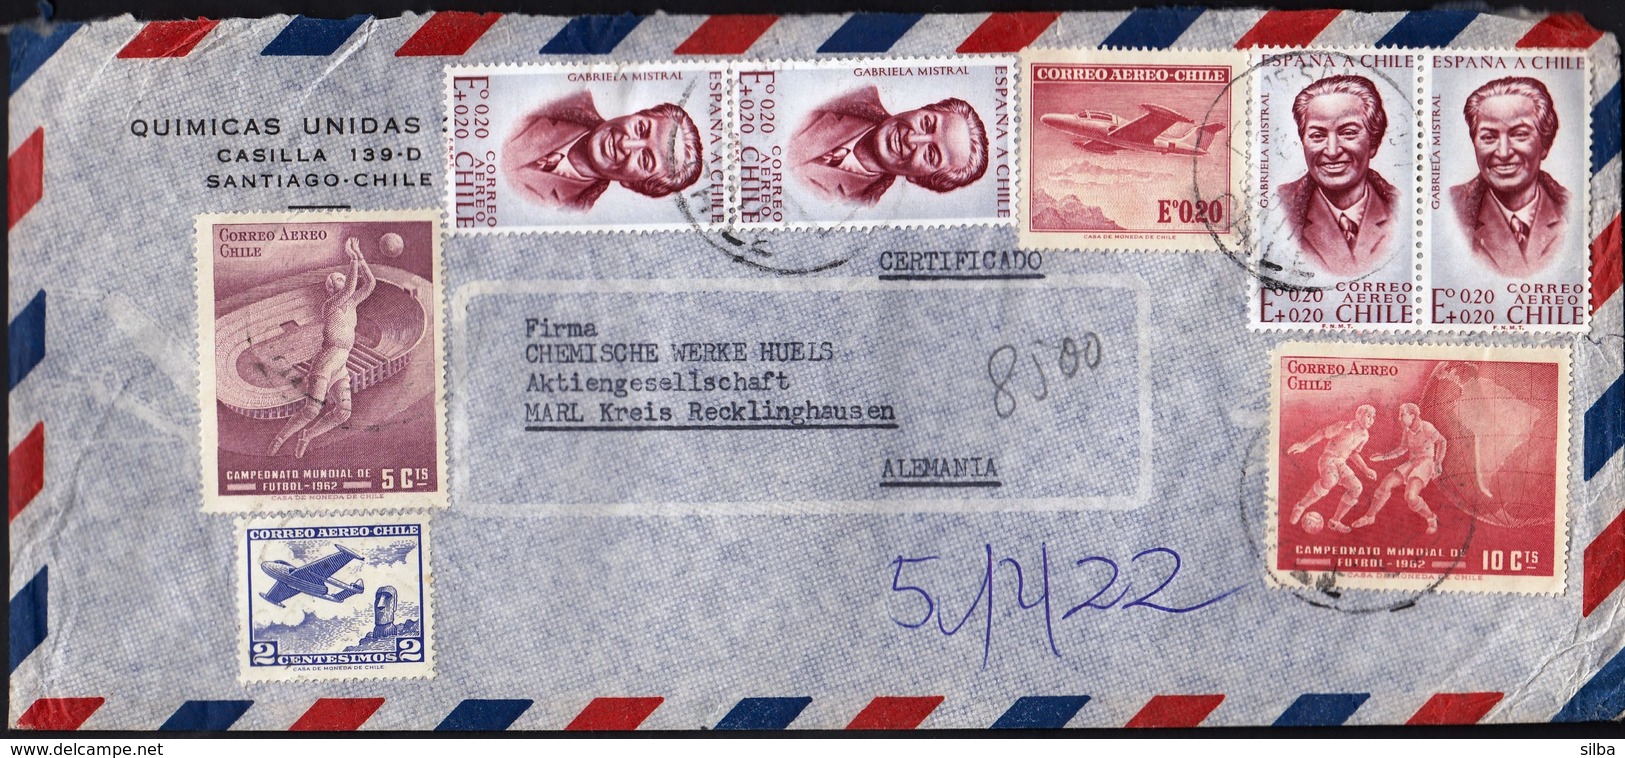 Chile Santiago / Football World Cup 1962, Gabriela Mistral, Airplane / Quimicas Unidas / Air Mail - Chile